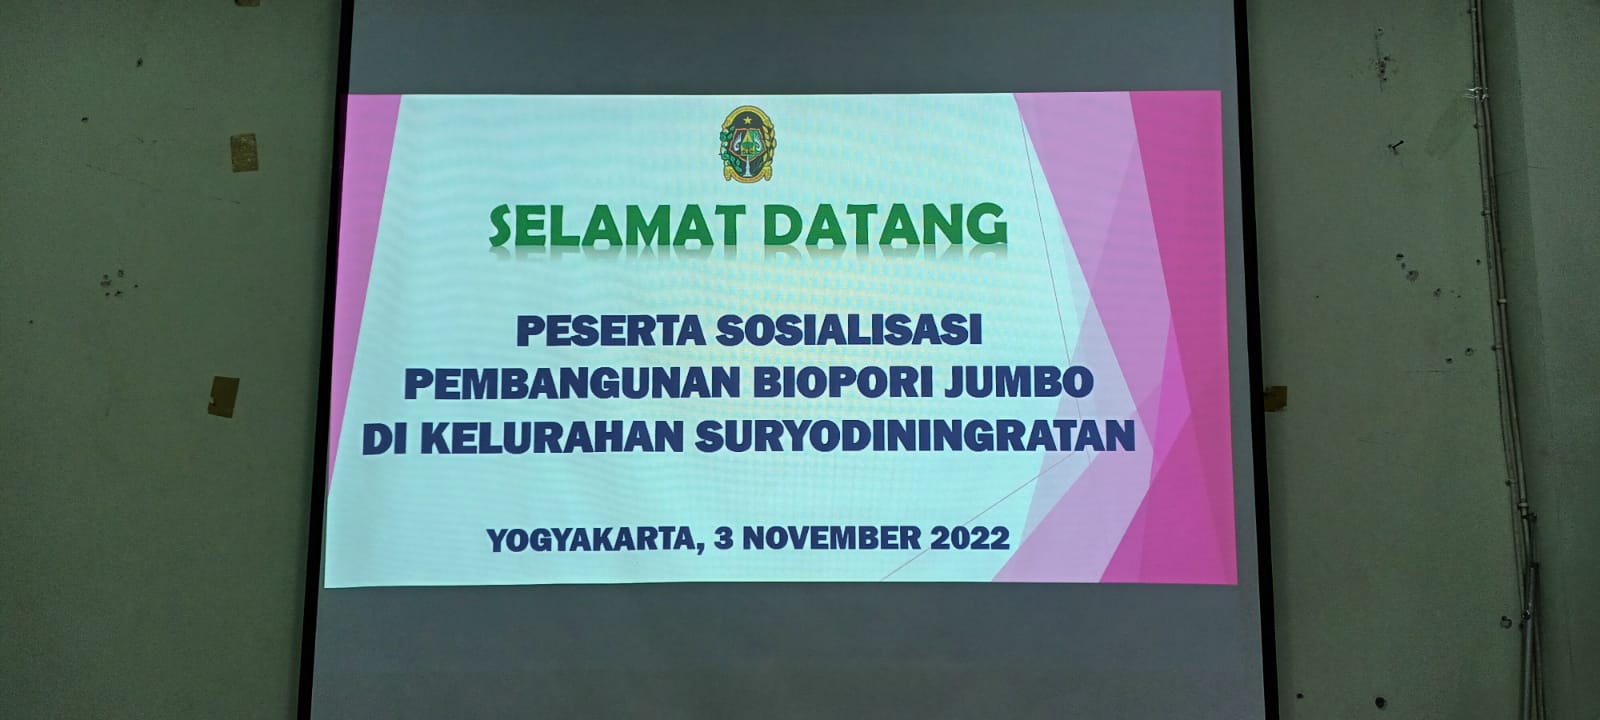 Kelurahan Suryodiningratan mengadakan Sosialisasi Pembangunan BIOPORI Jumbo